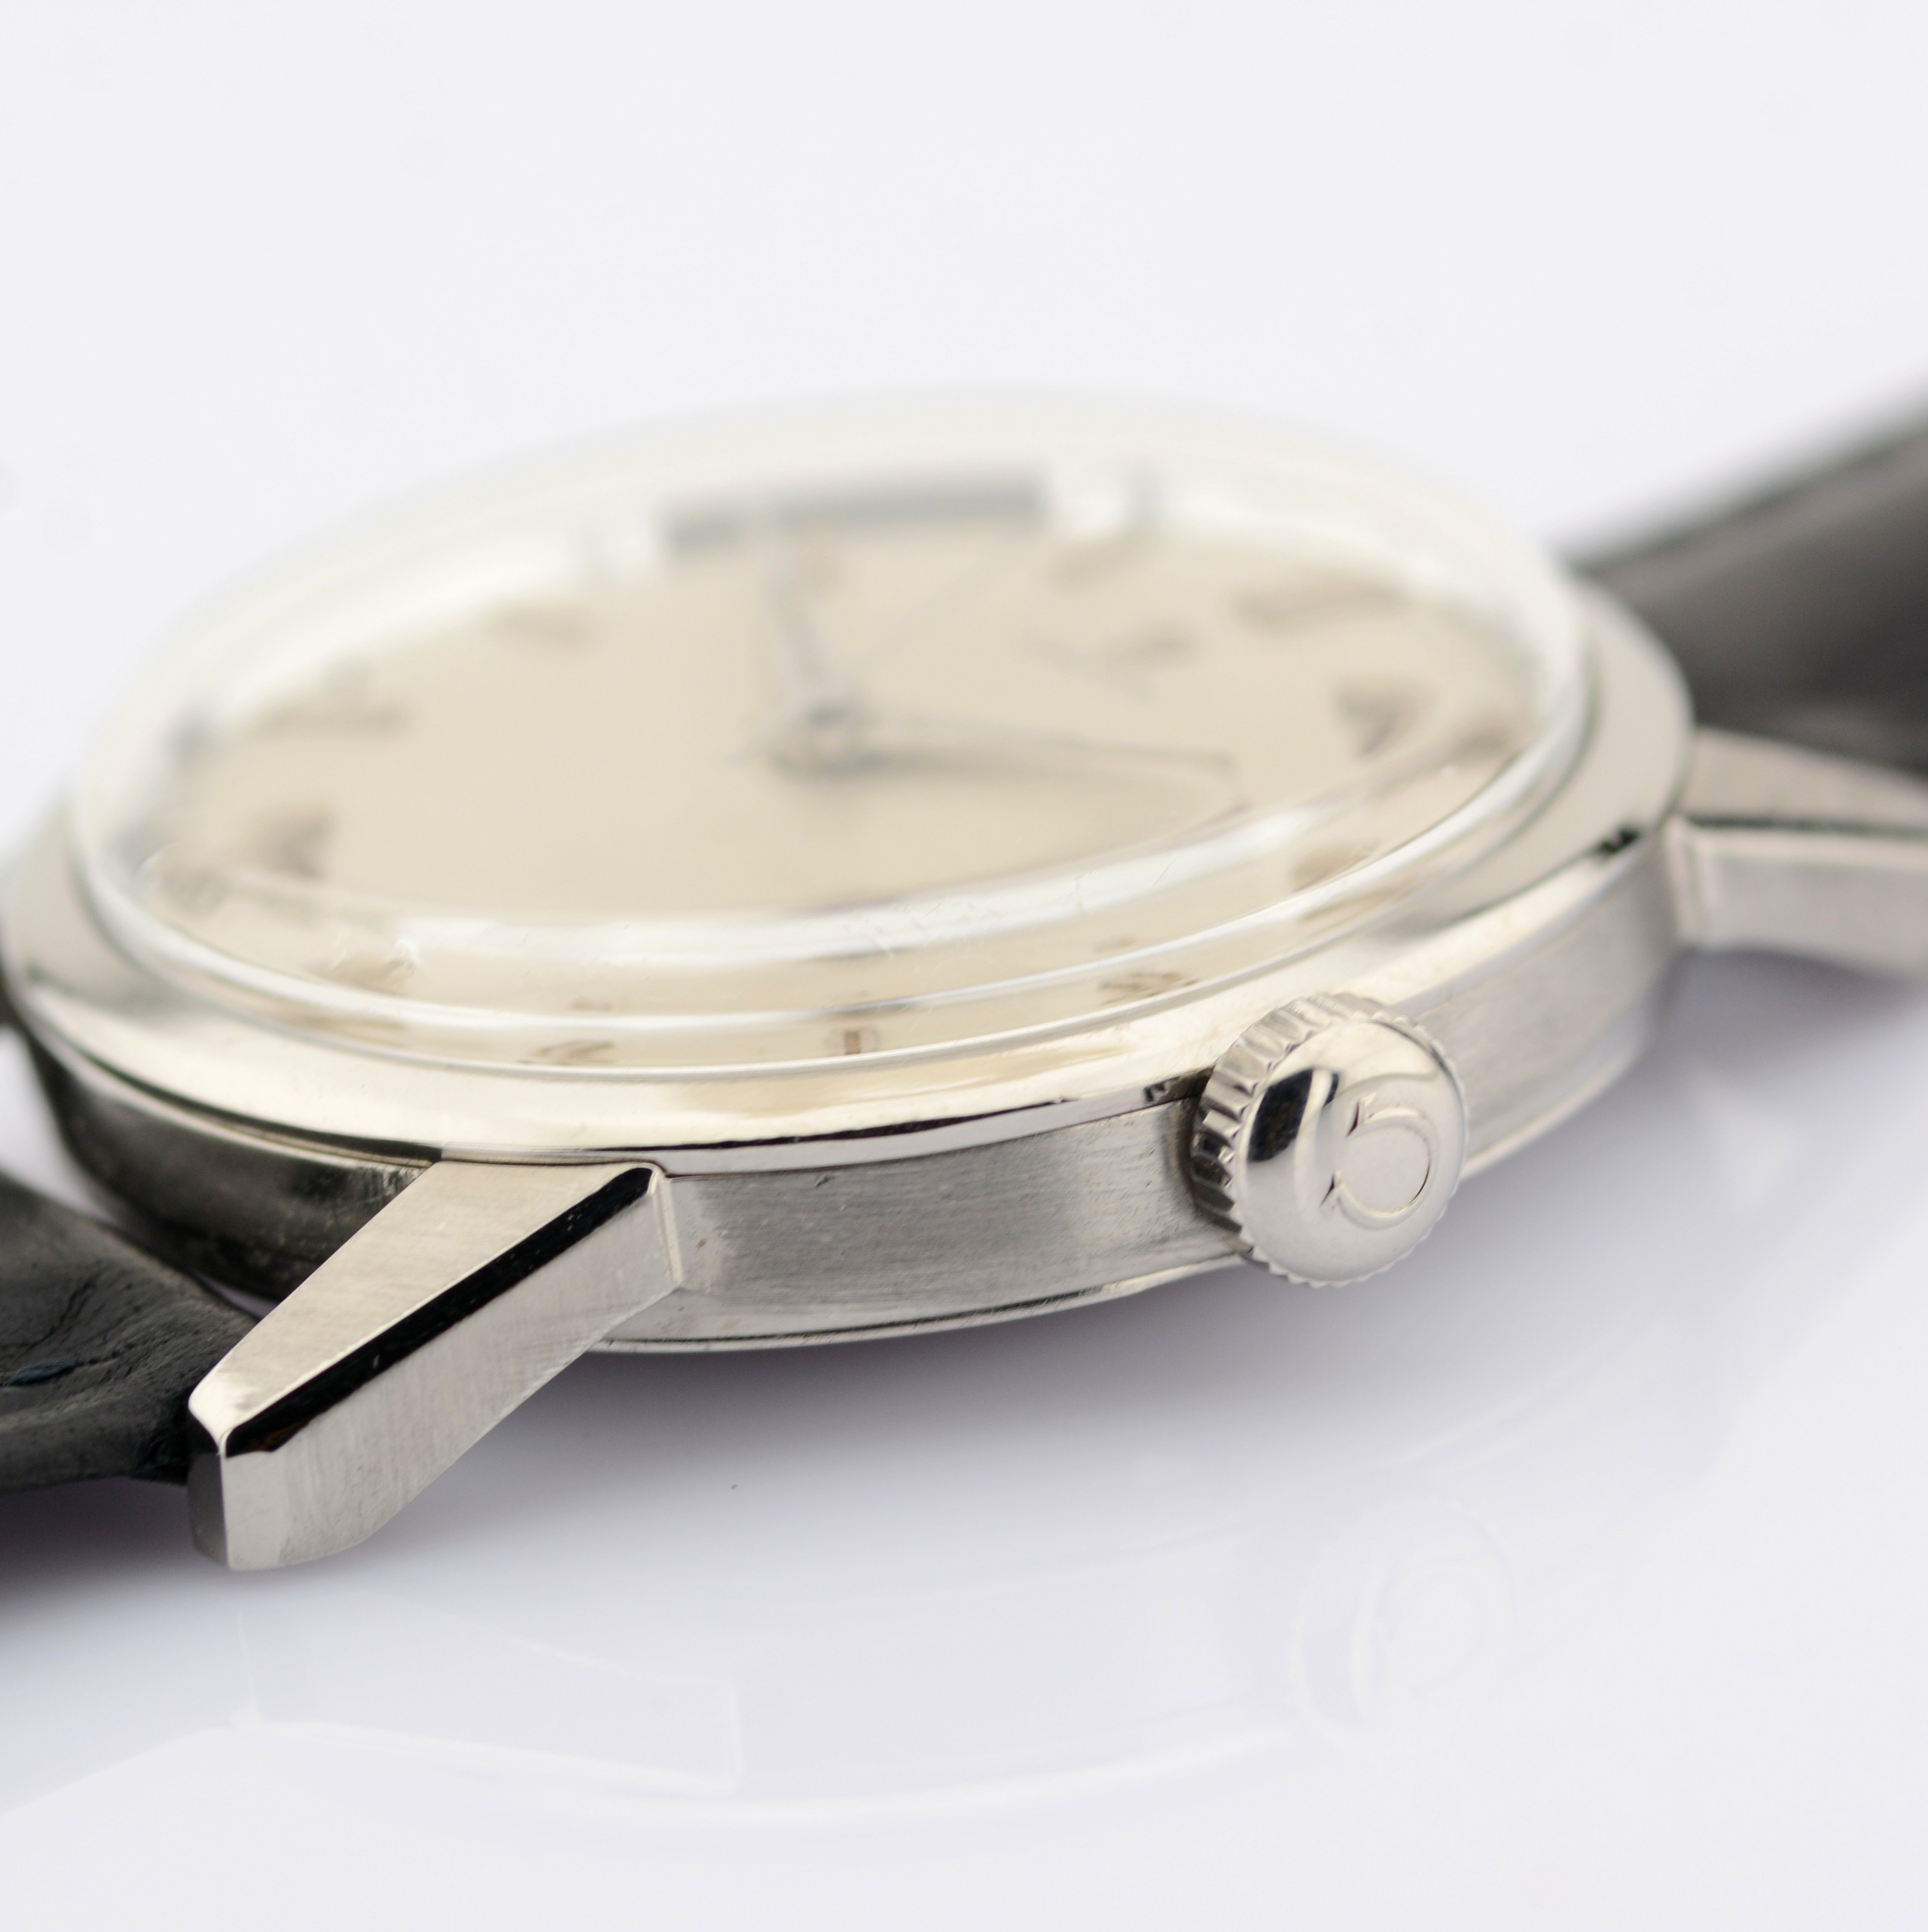 Omega / Seamaster 35 mm - Gentlmen's Steel Wrist Watch - Image 5 of 9